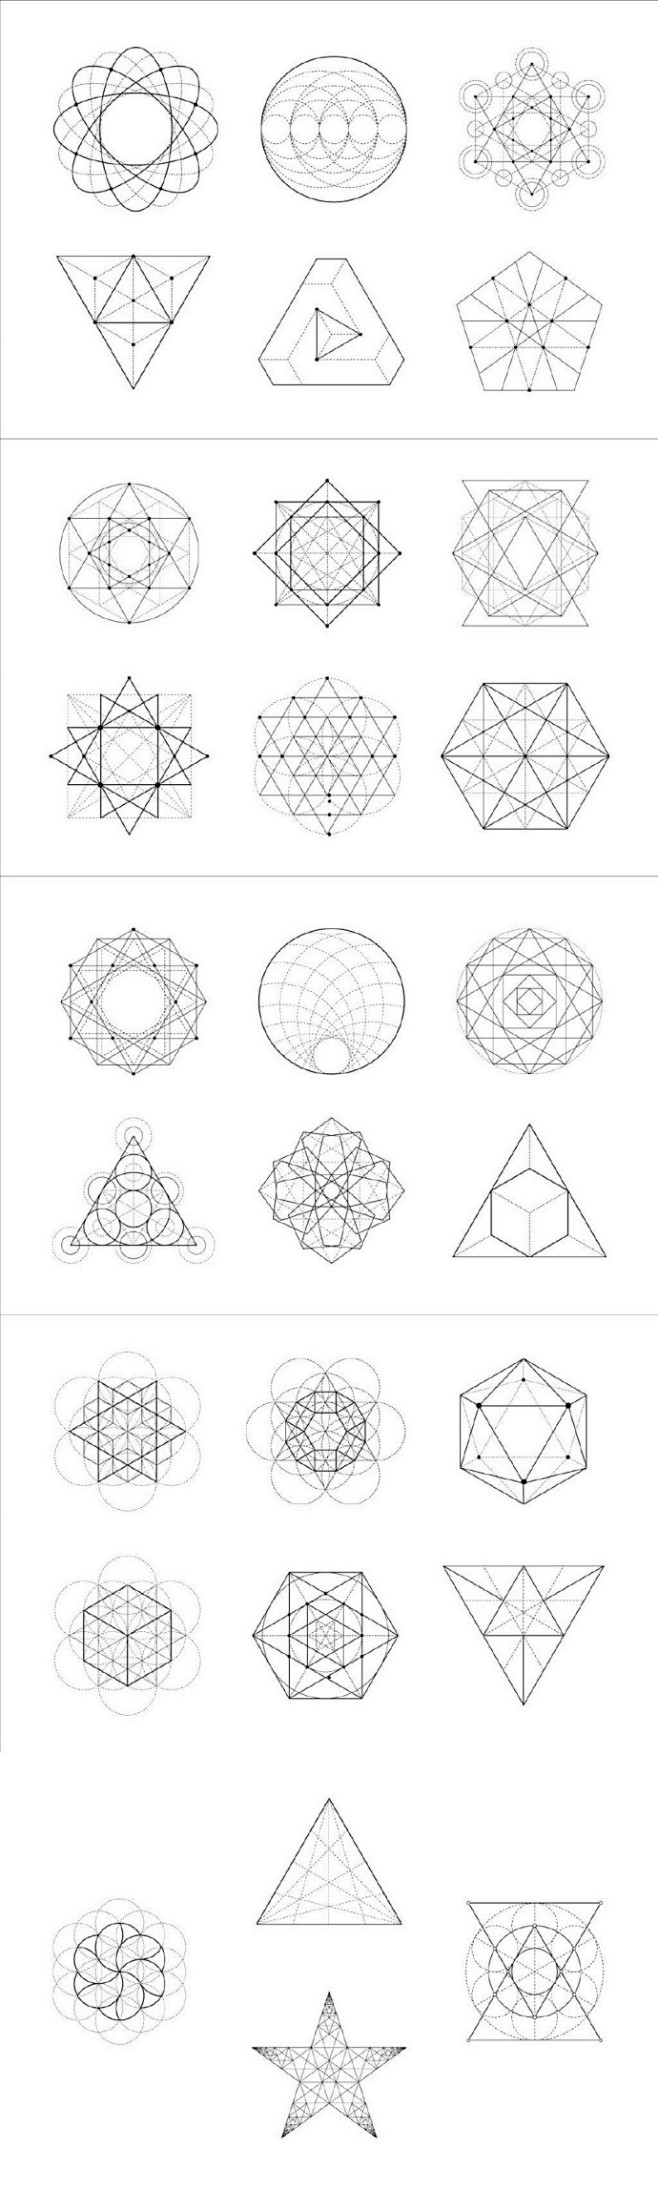 200多种几何图形的组合形式简单的三角形圆形矩形等几何图形组合可以